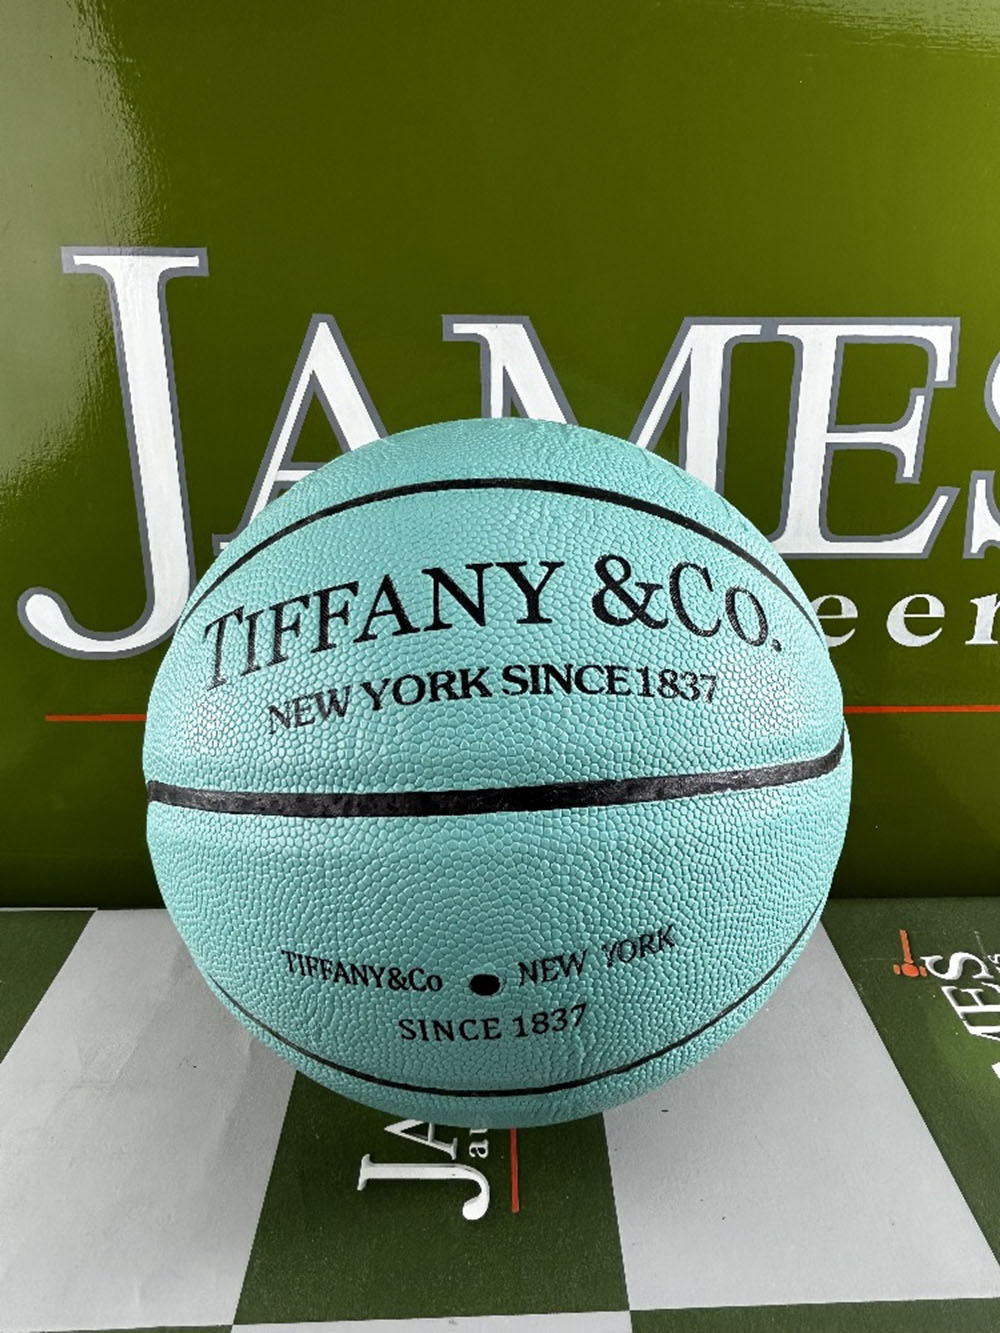 Tiffany &#038; Co Full Size Basketball-Size 7 &#8211; Unused Example - Image 3 of 4